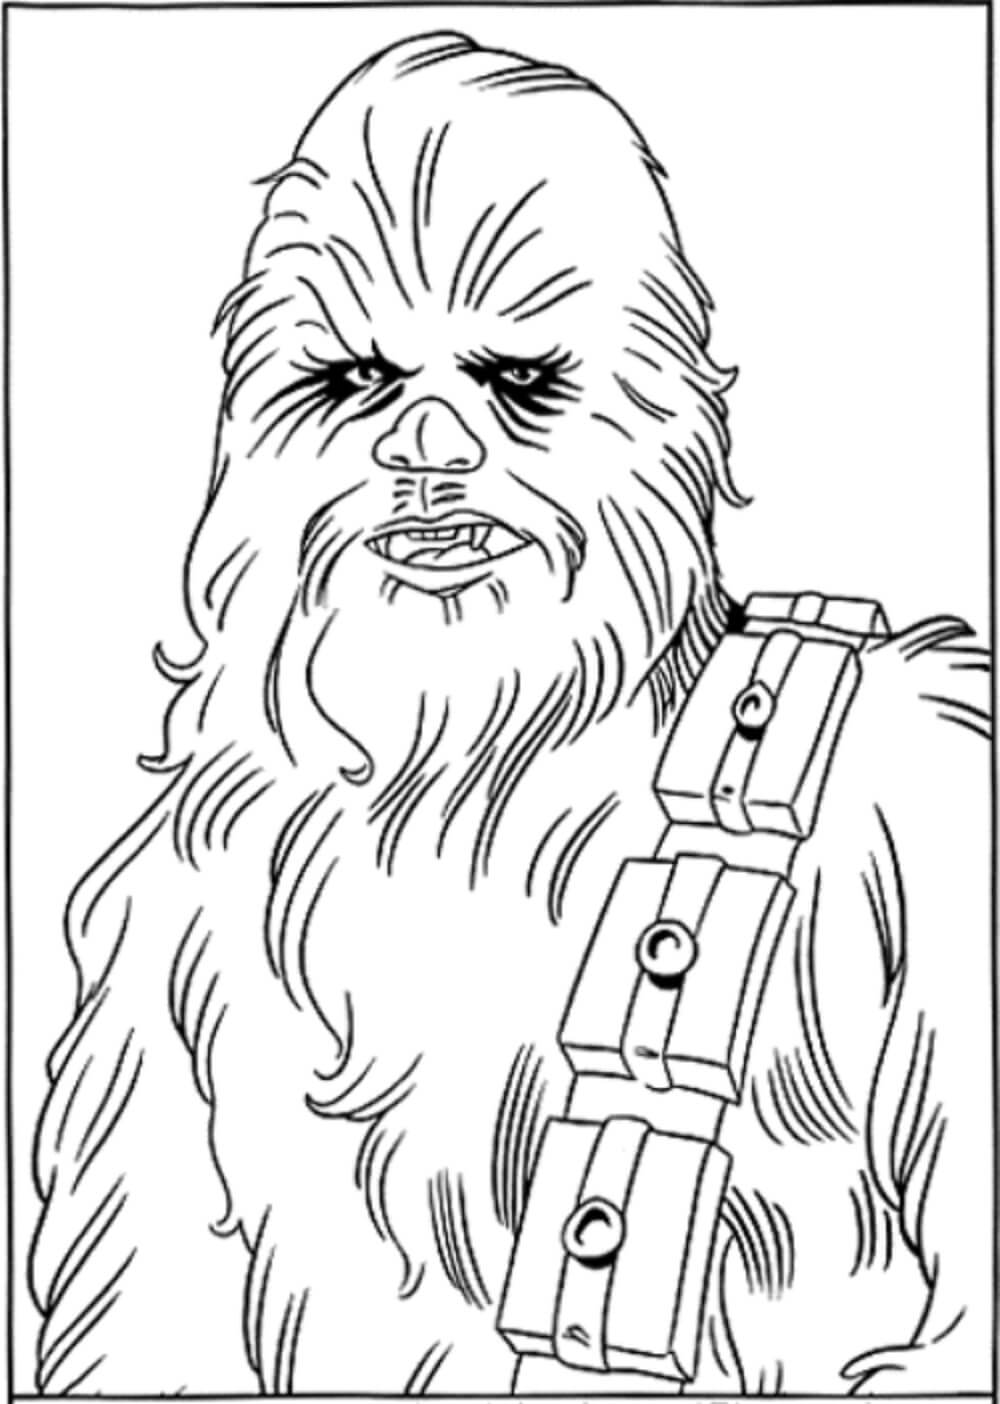 Portrett av Chewbacca fargelegging